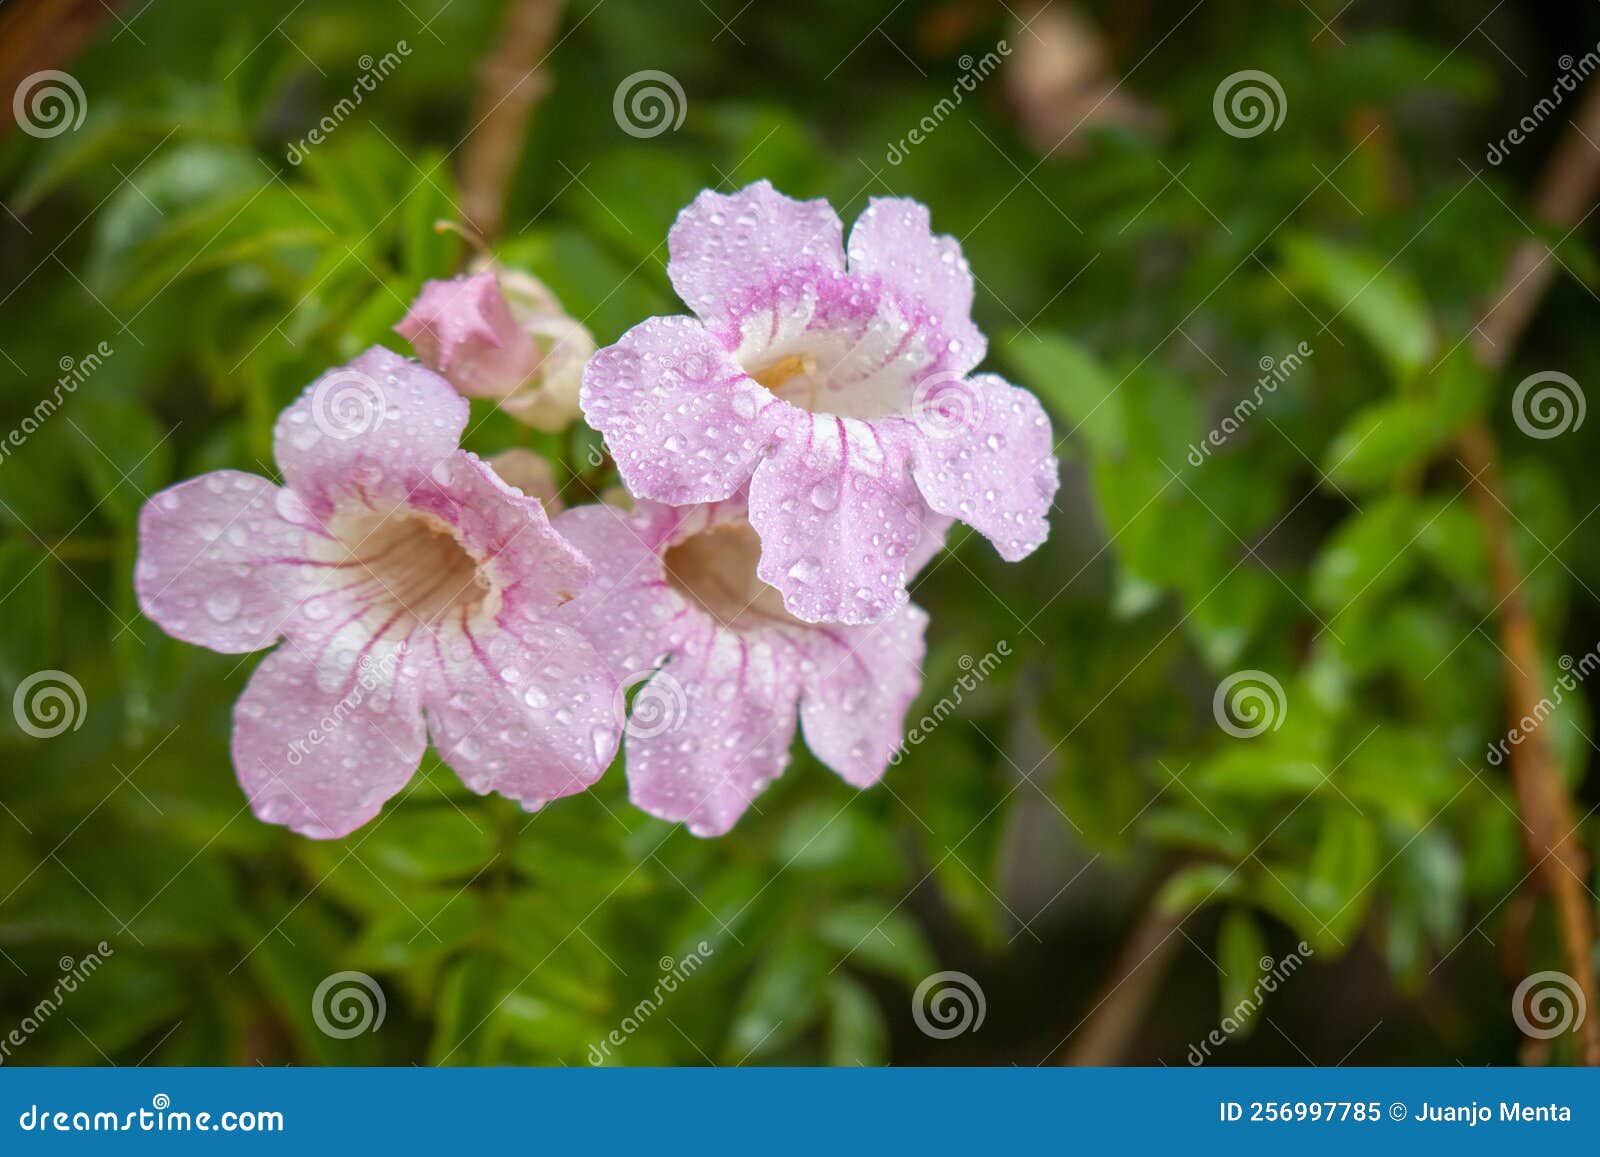 bignonia rosa, arbusto de pandora, trompetas